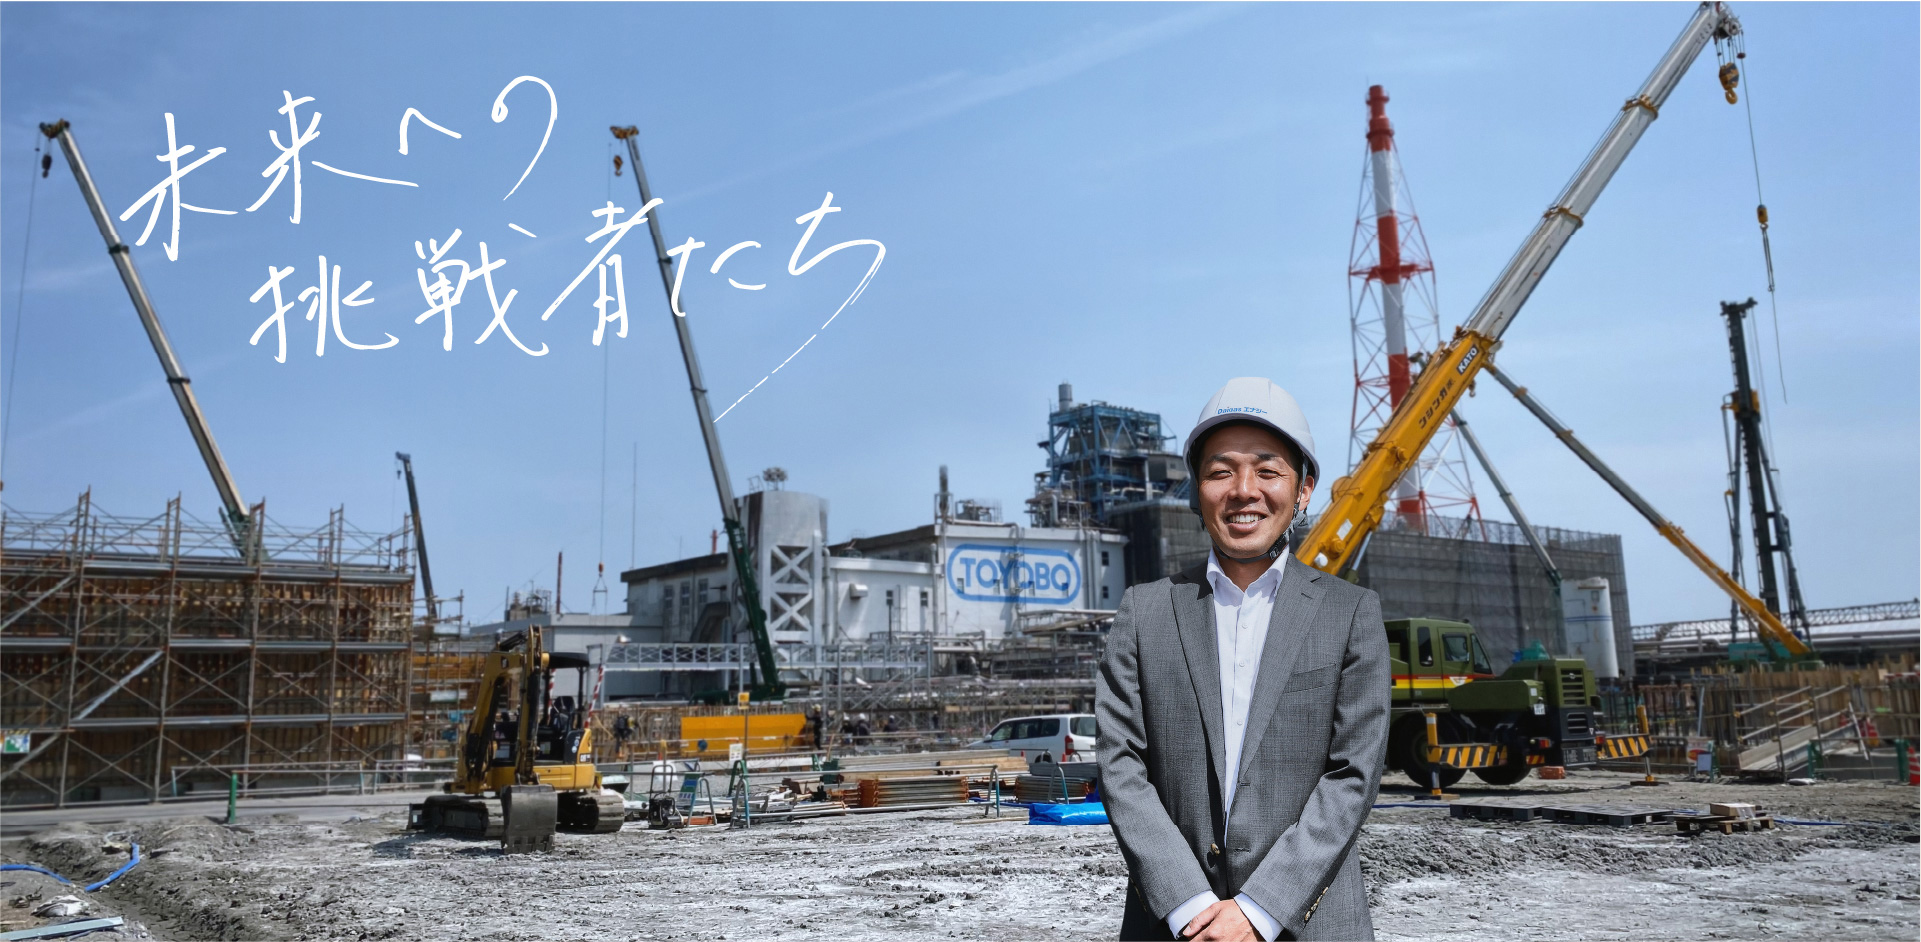 カーボンニュートラル社会へ向けて日本の火力自家発電をエネルギー転換する